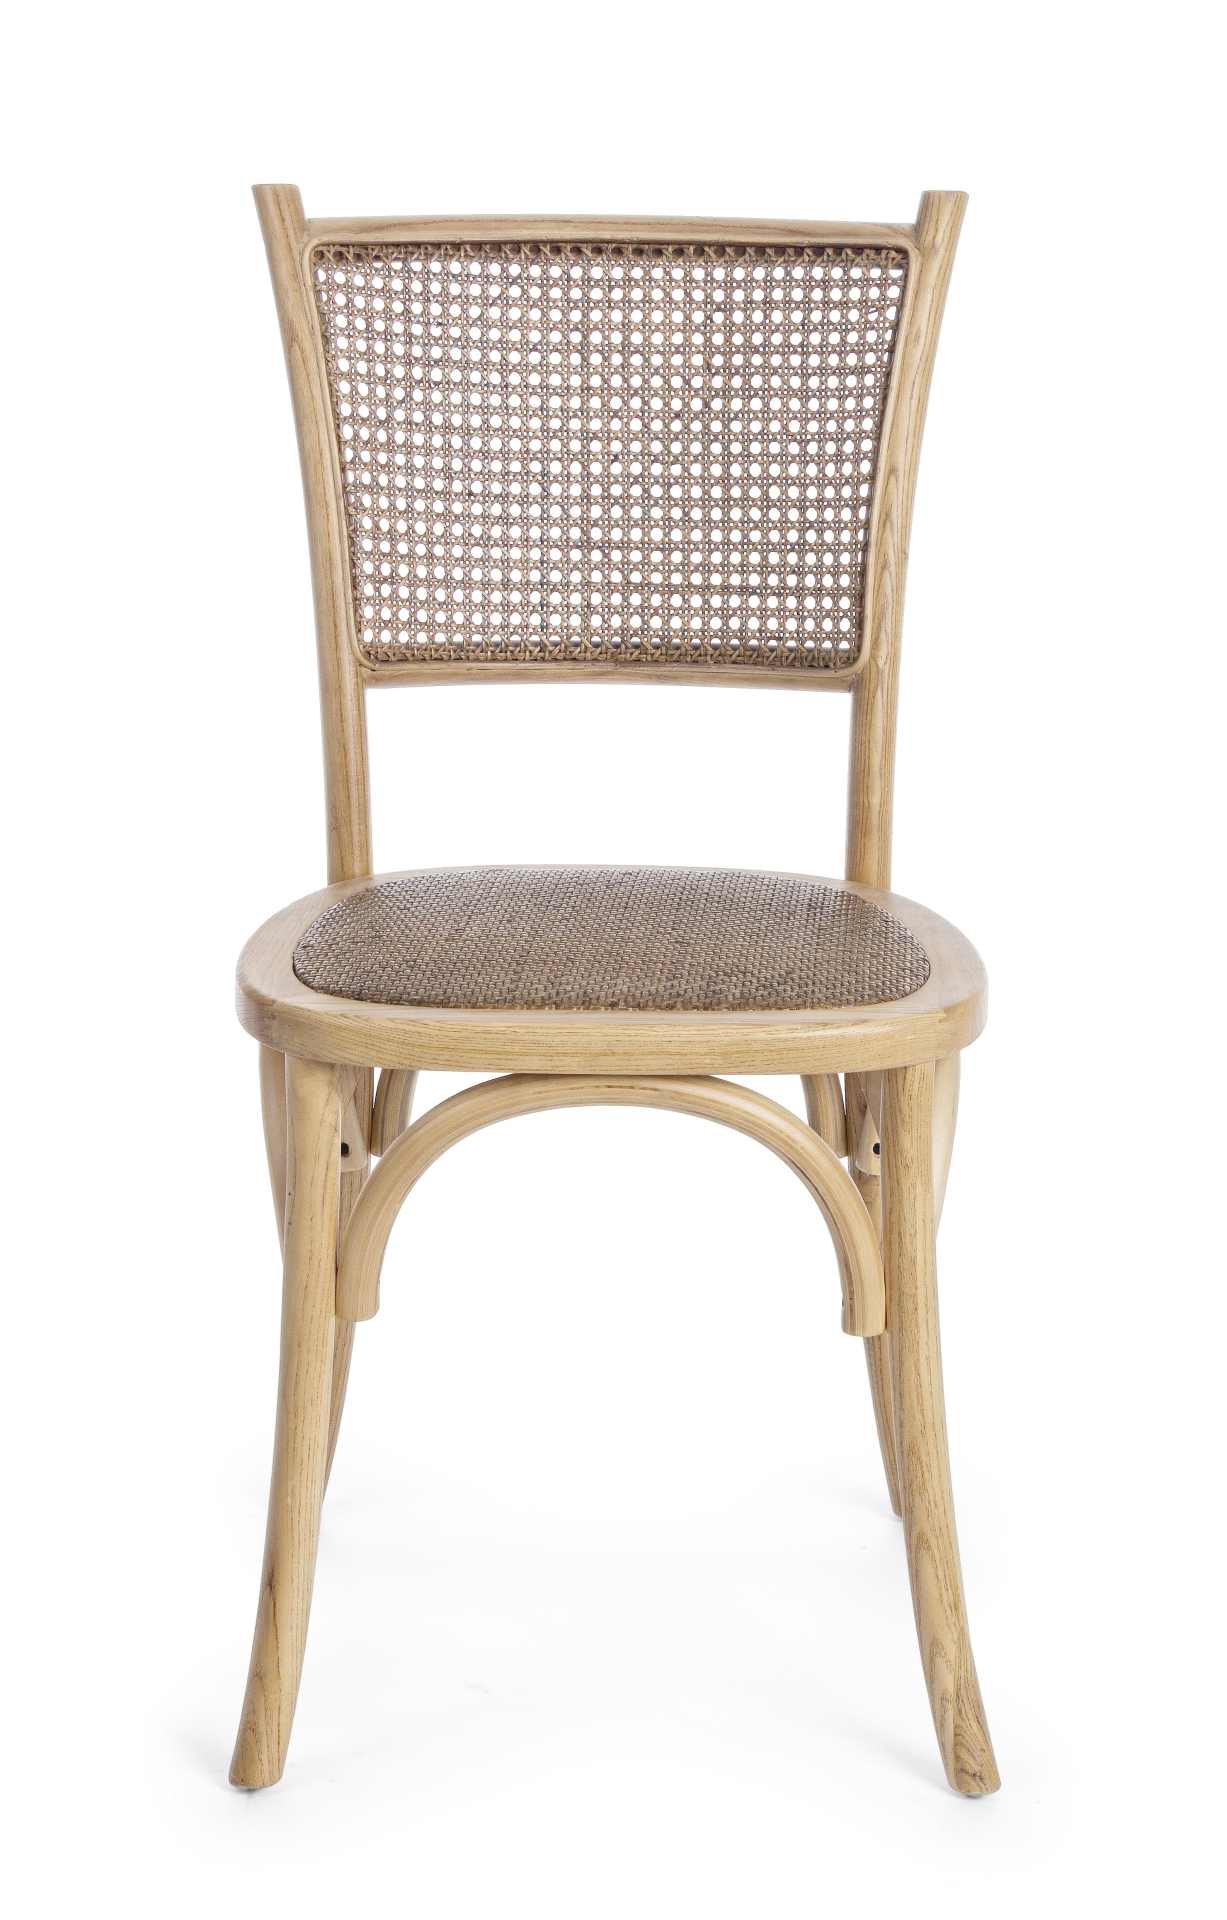 Der Stuhl Carrel überzeugt mit seinem klassischen Design. Gefertigt wurde der Stuhl aus Ulmenholz, welches einen natürlichen Farbton besitzt. Die Sitz- und Rückenfläche sind aus Rattan. Die Sitzhöhe beträgt 46 cm.